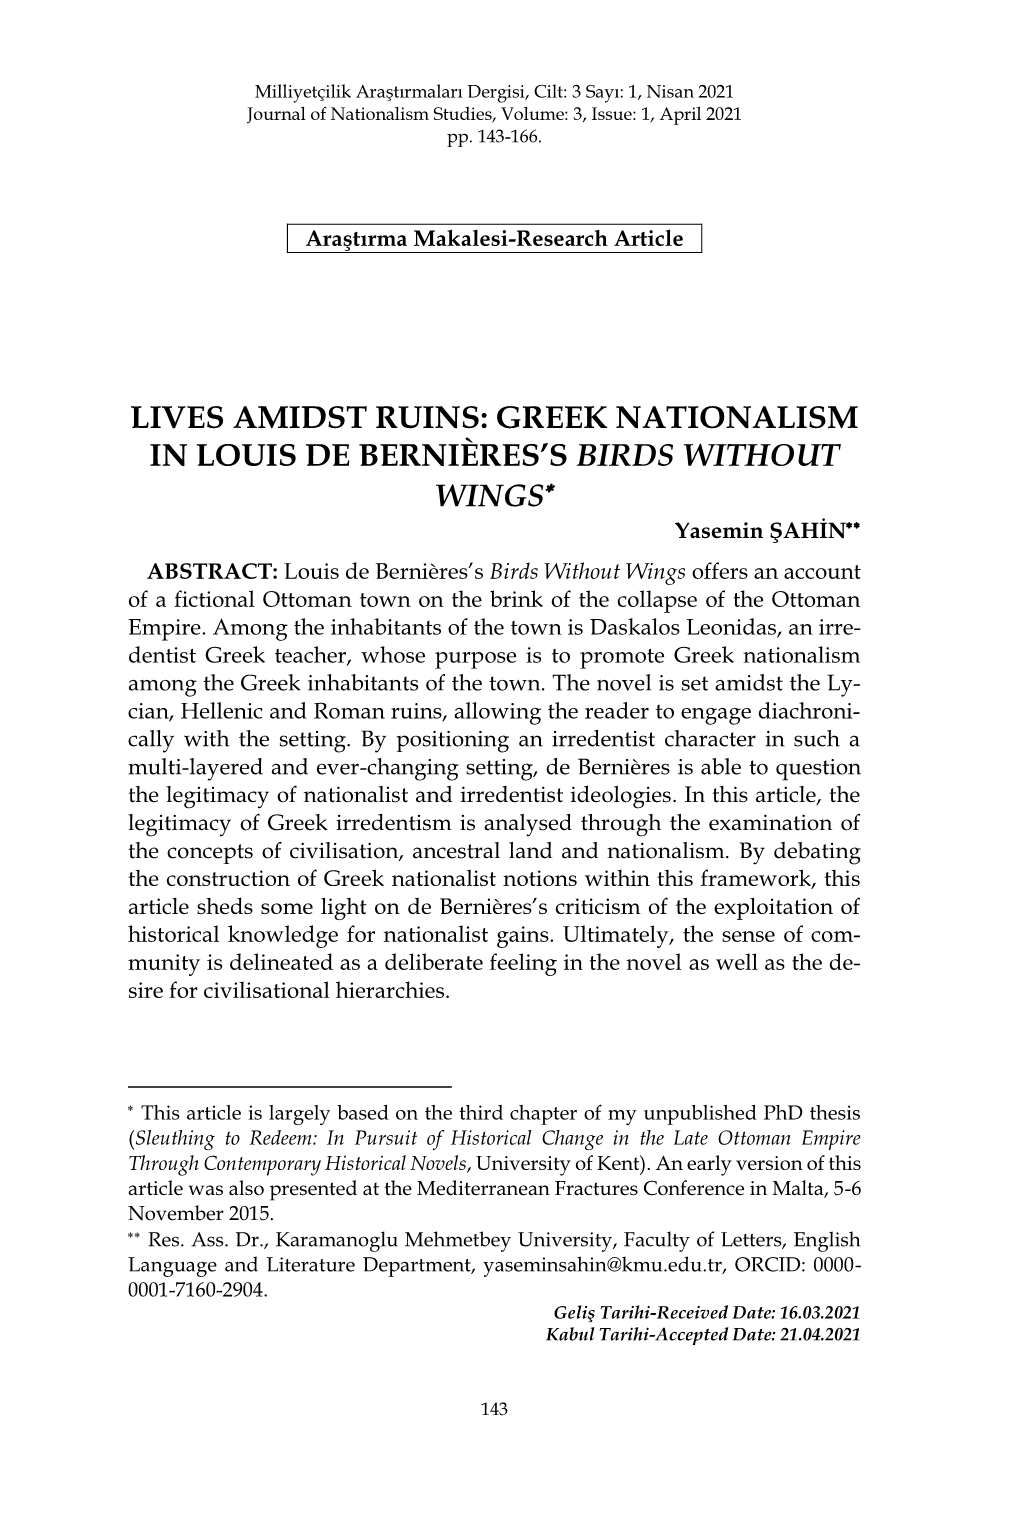 Greek Nationalism in Louis De Bernières's Birds